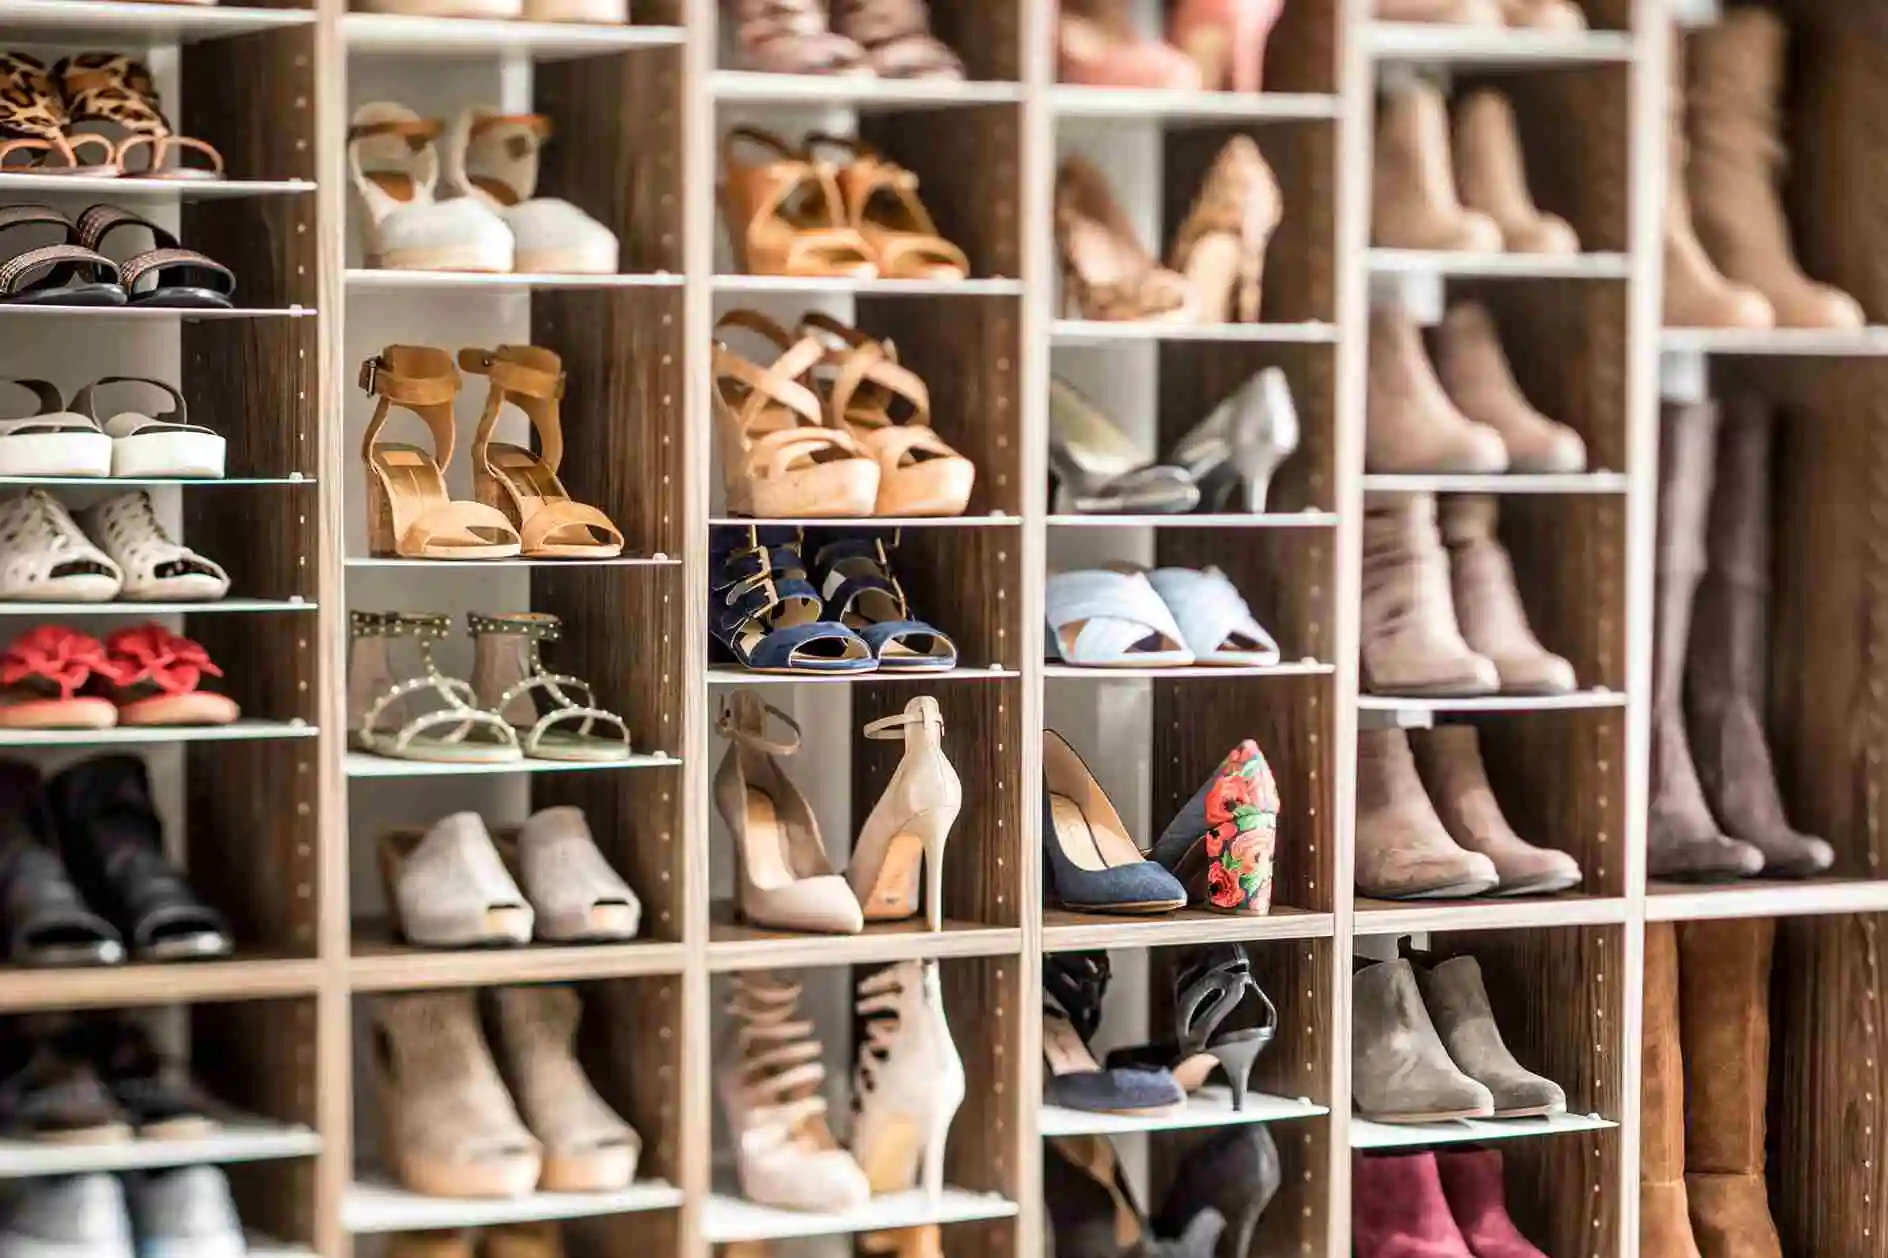 Shoe Storage Wardrobe bedroom Shoe cabinet Full scene 3D model